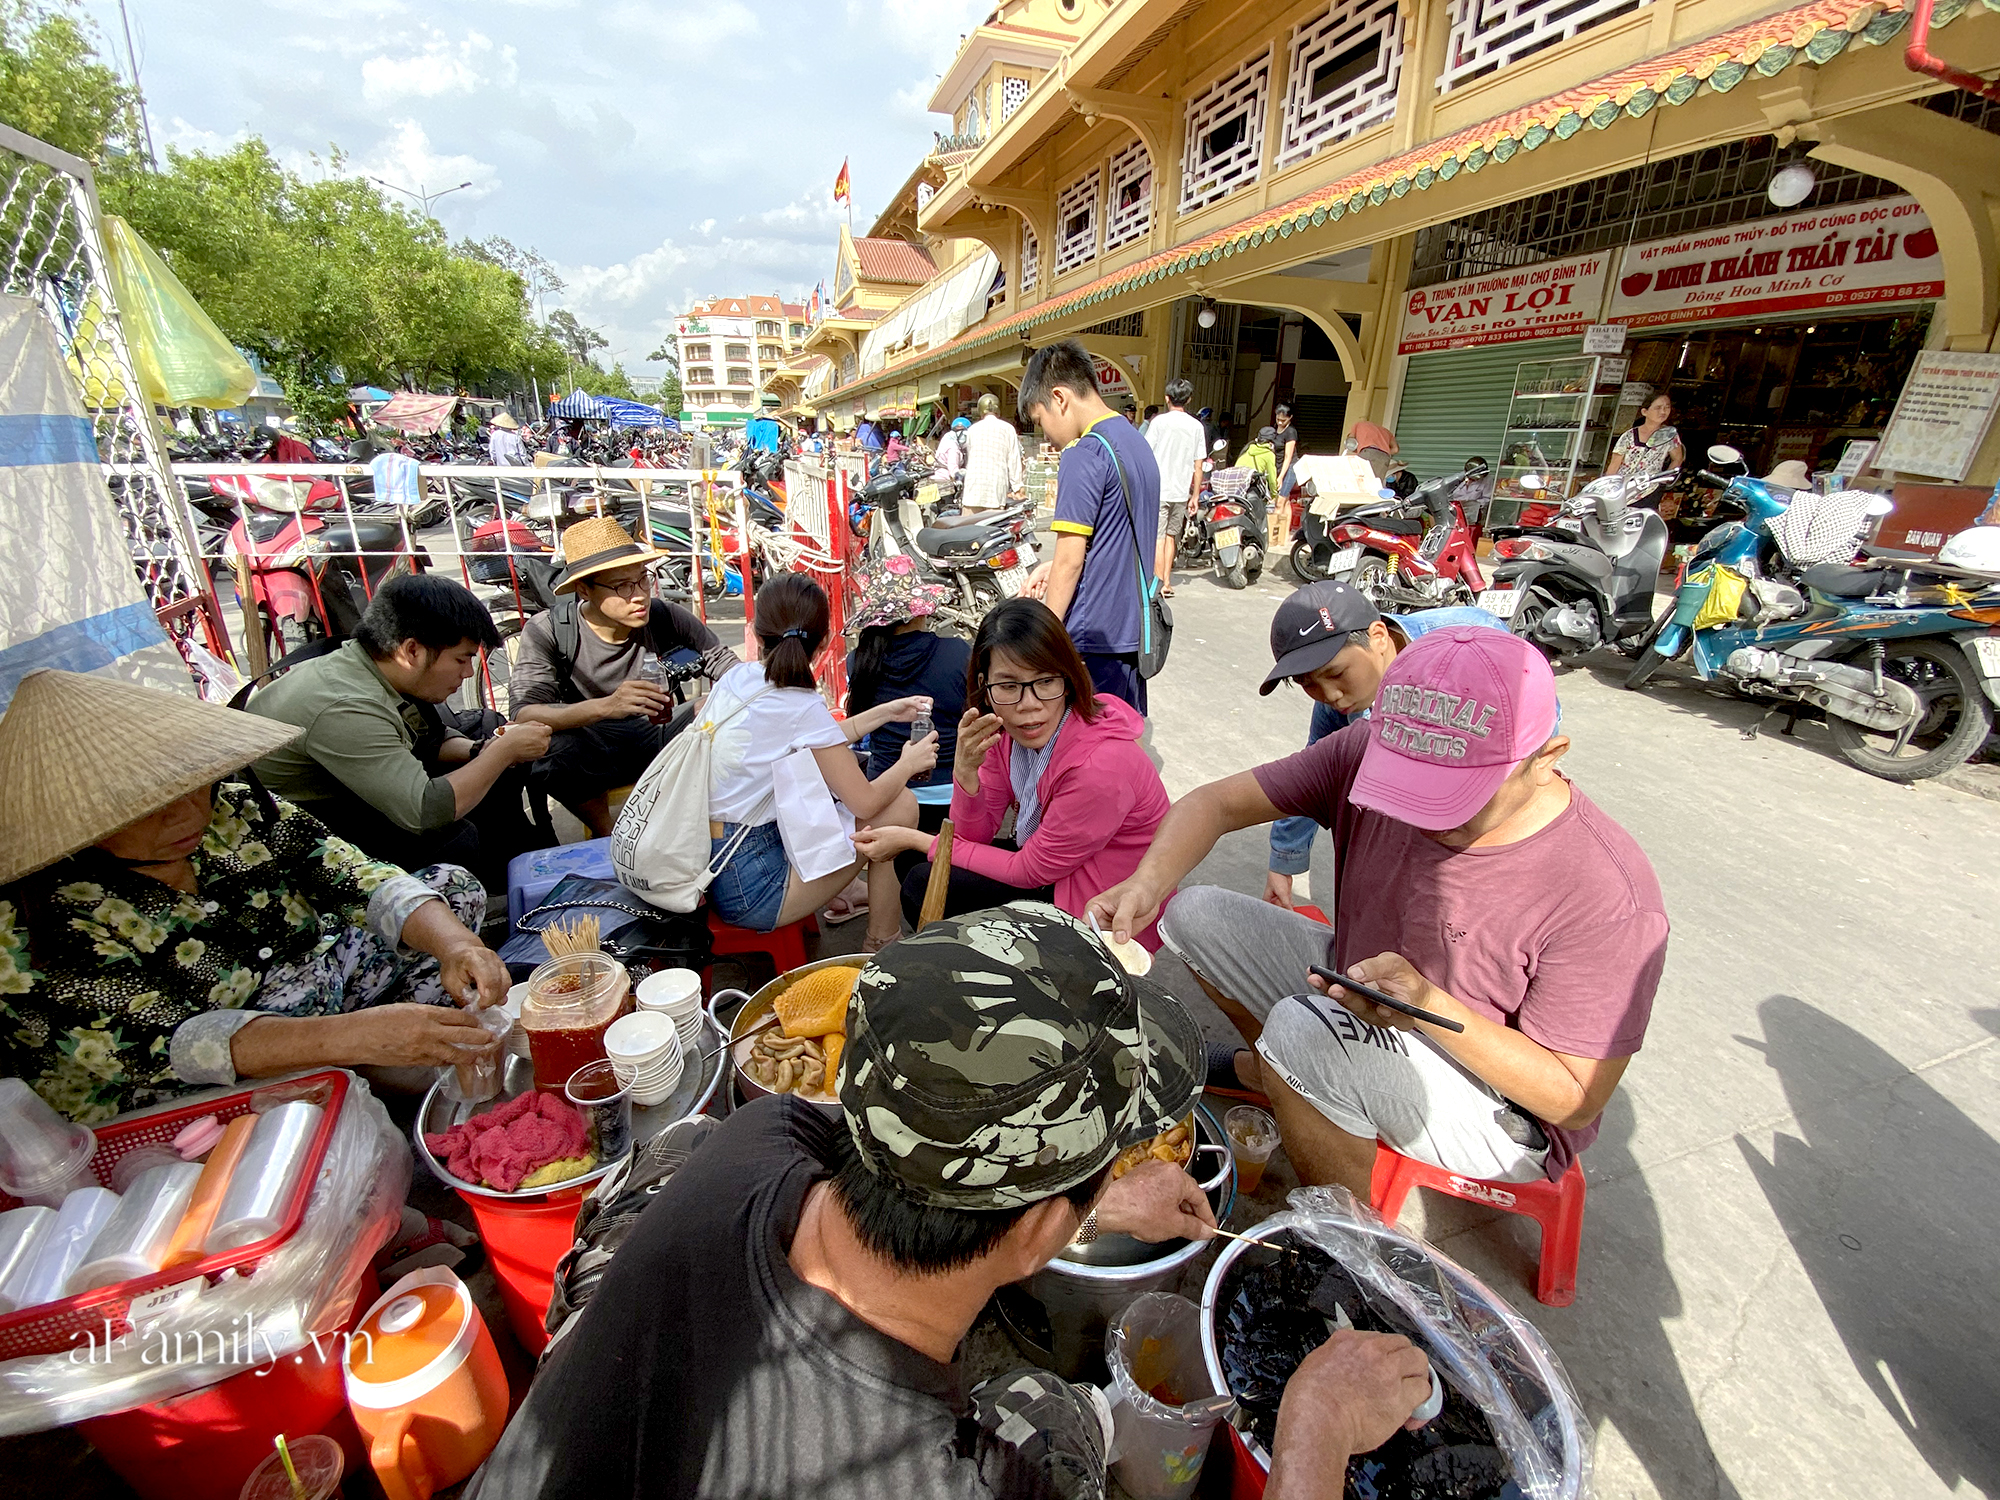 Hàng phá lấu 30 năm tuổi nổi tiếng đắt nhất Sài Gòn ở khu chợ Lớn quận 5 nay đã vượt mốc hơn nửa triệu/kg, vẫn độc quyền mùi vị và khách tứ phương đều tìm tới ăn - Ảnh 5.